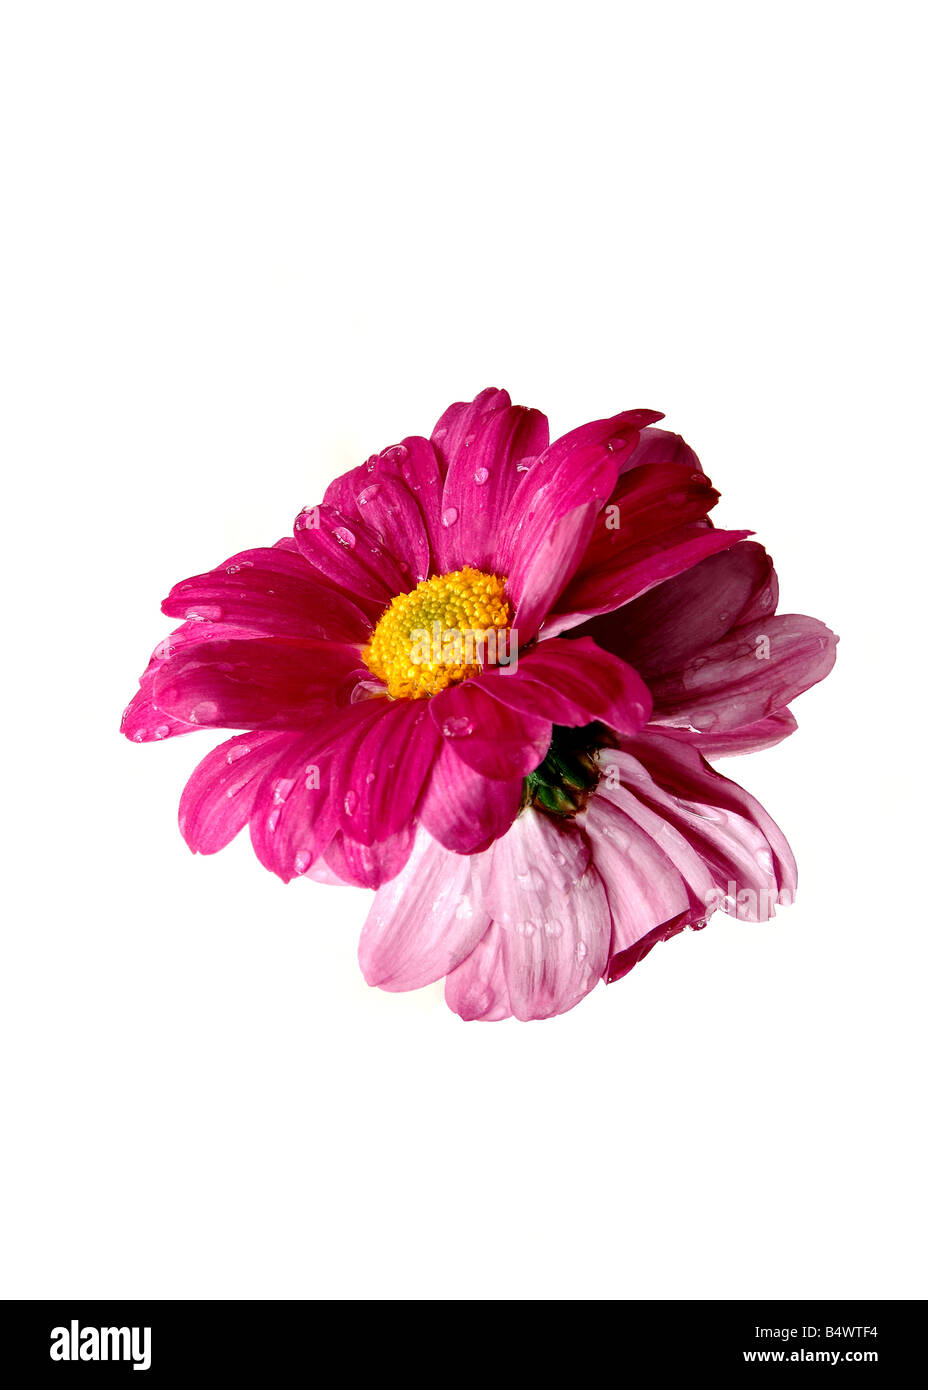 A beautiful pink daisy. Stock Photo